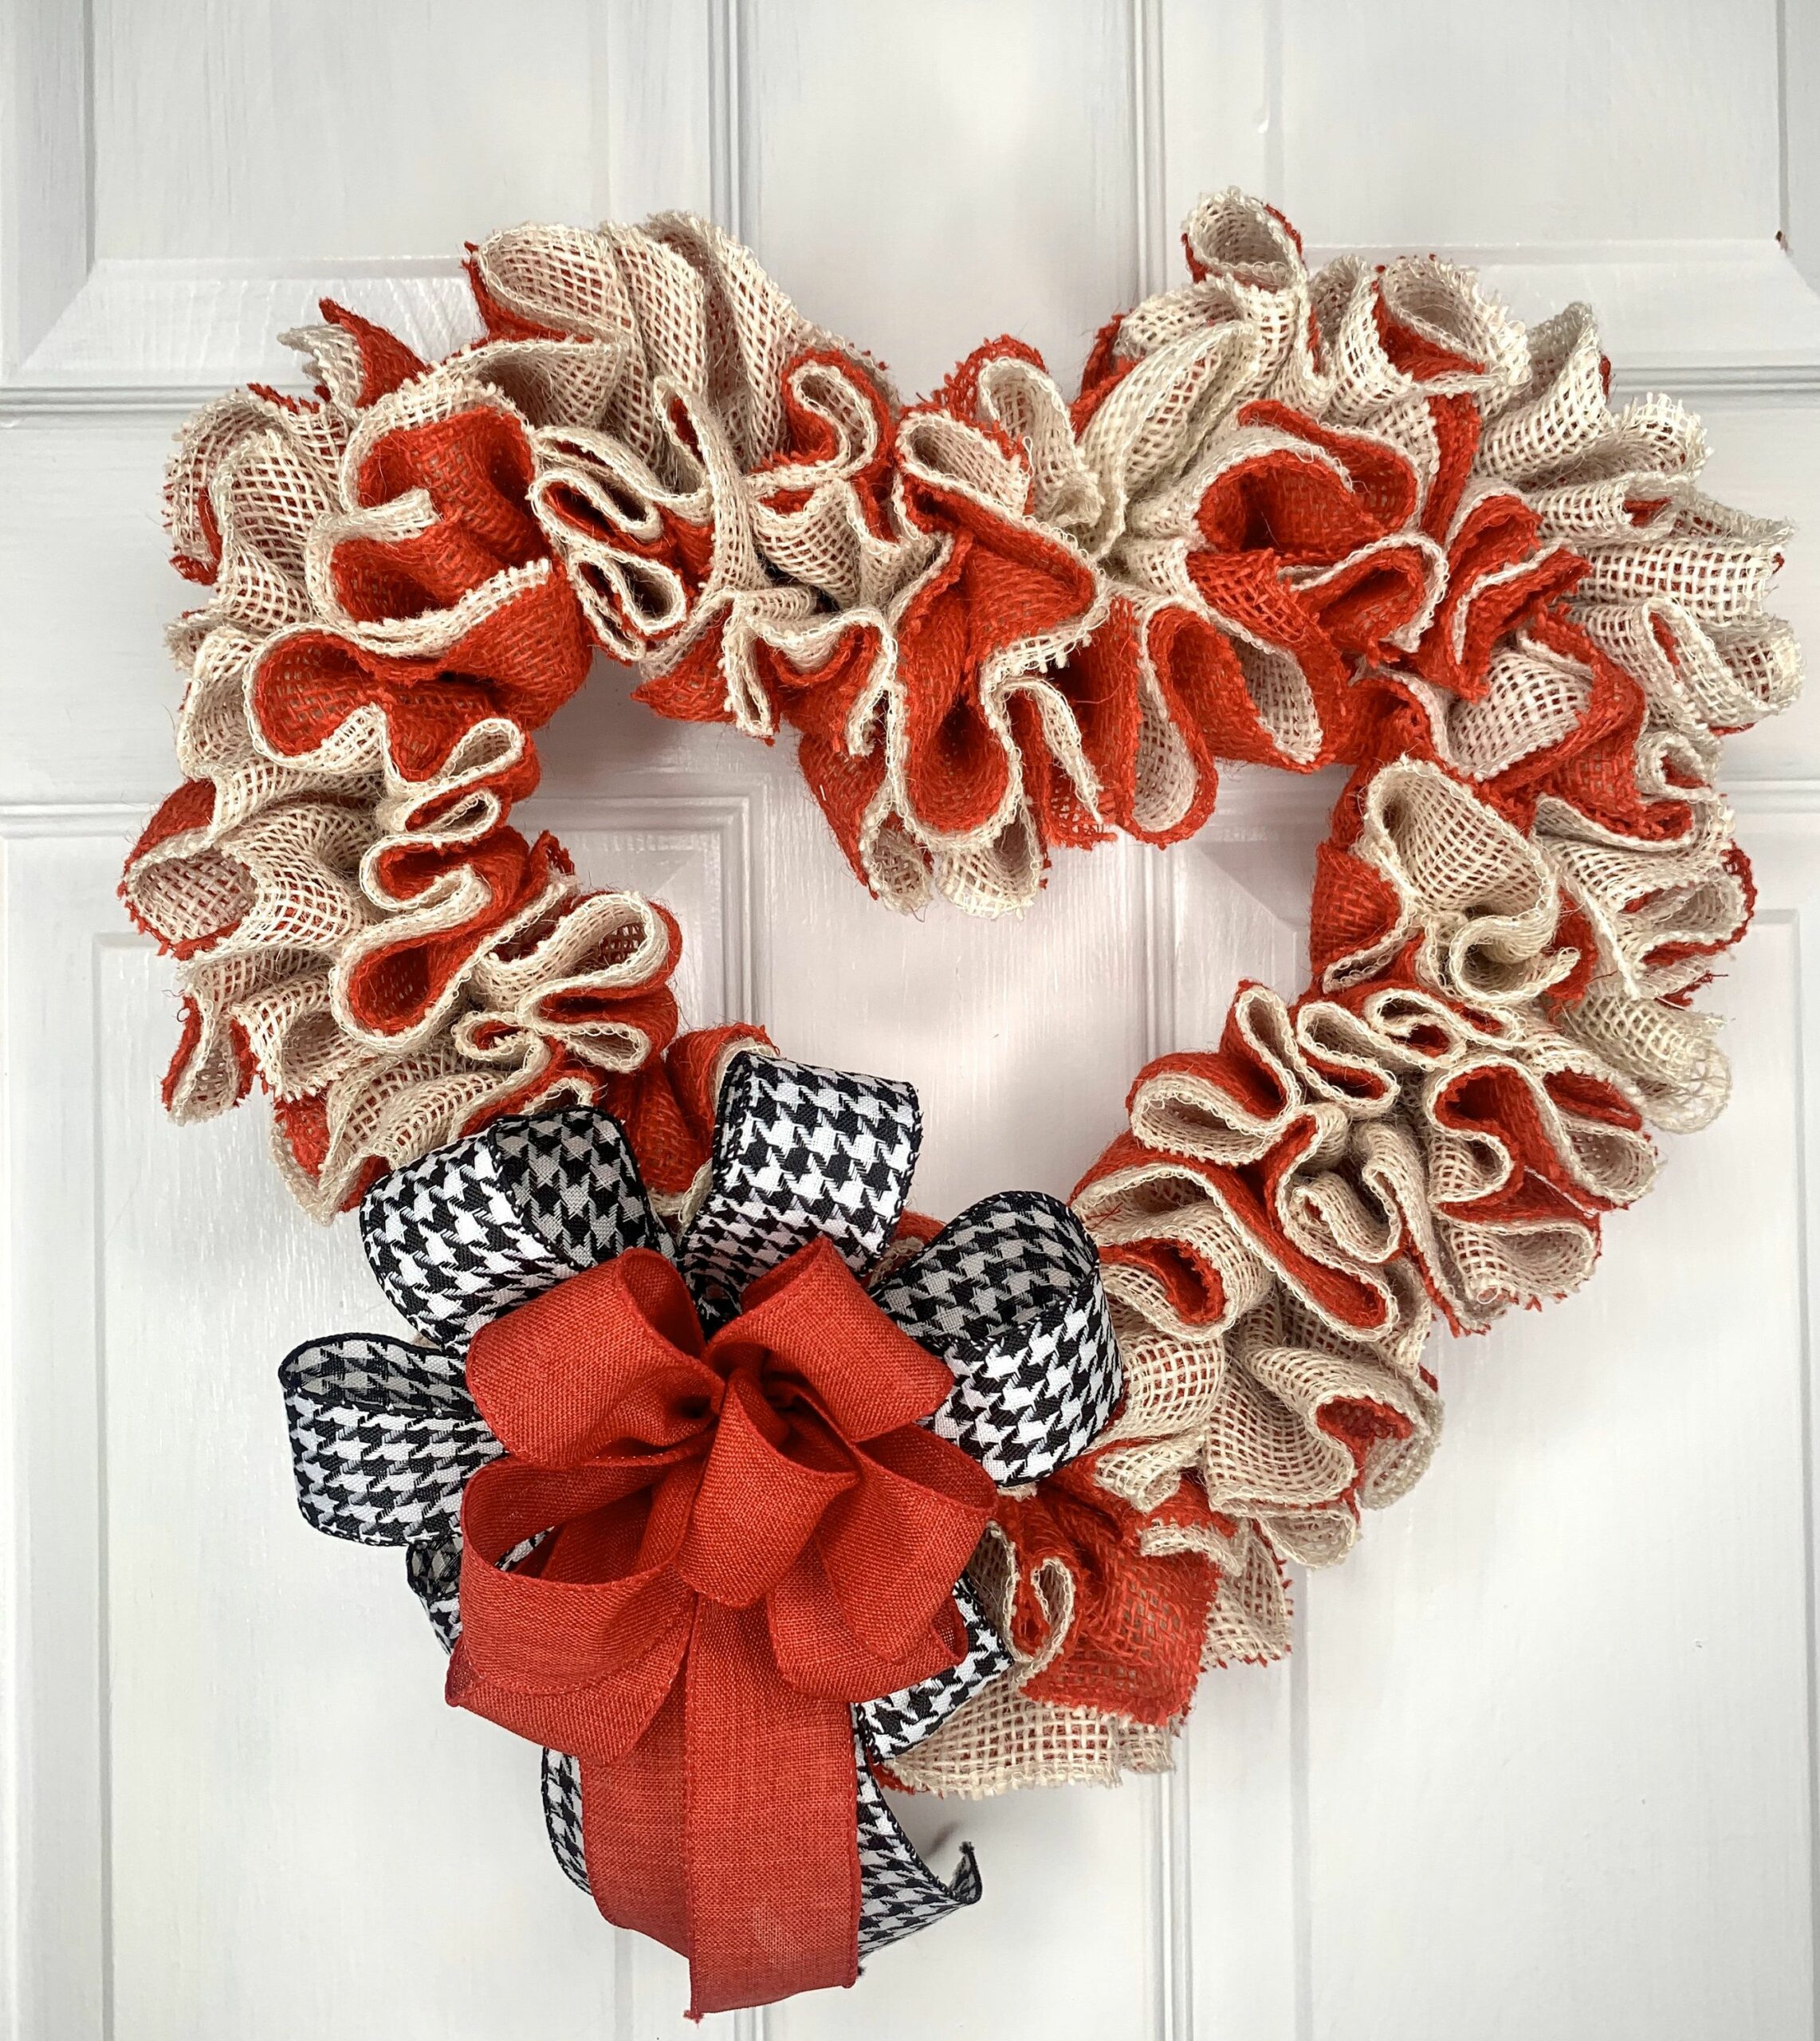 DIY Valentine wreath ideas